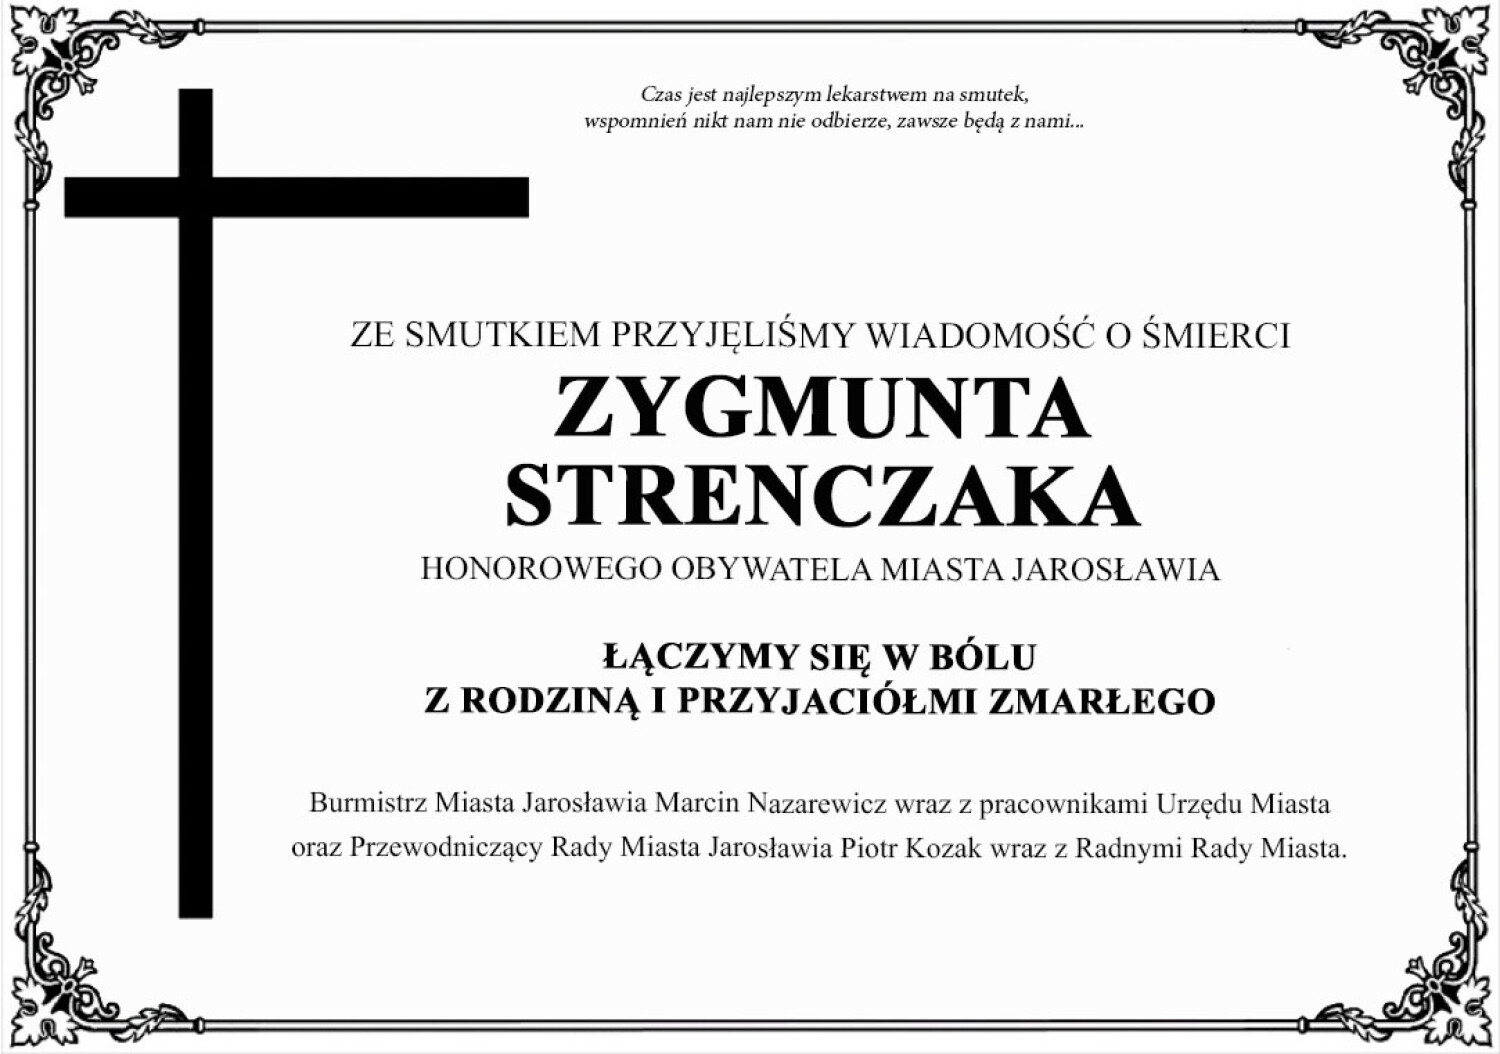 Kondolencje Zygmunt Strenczak